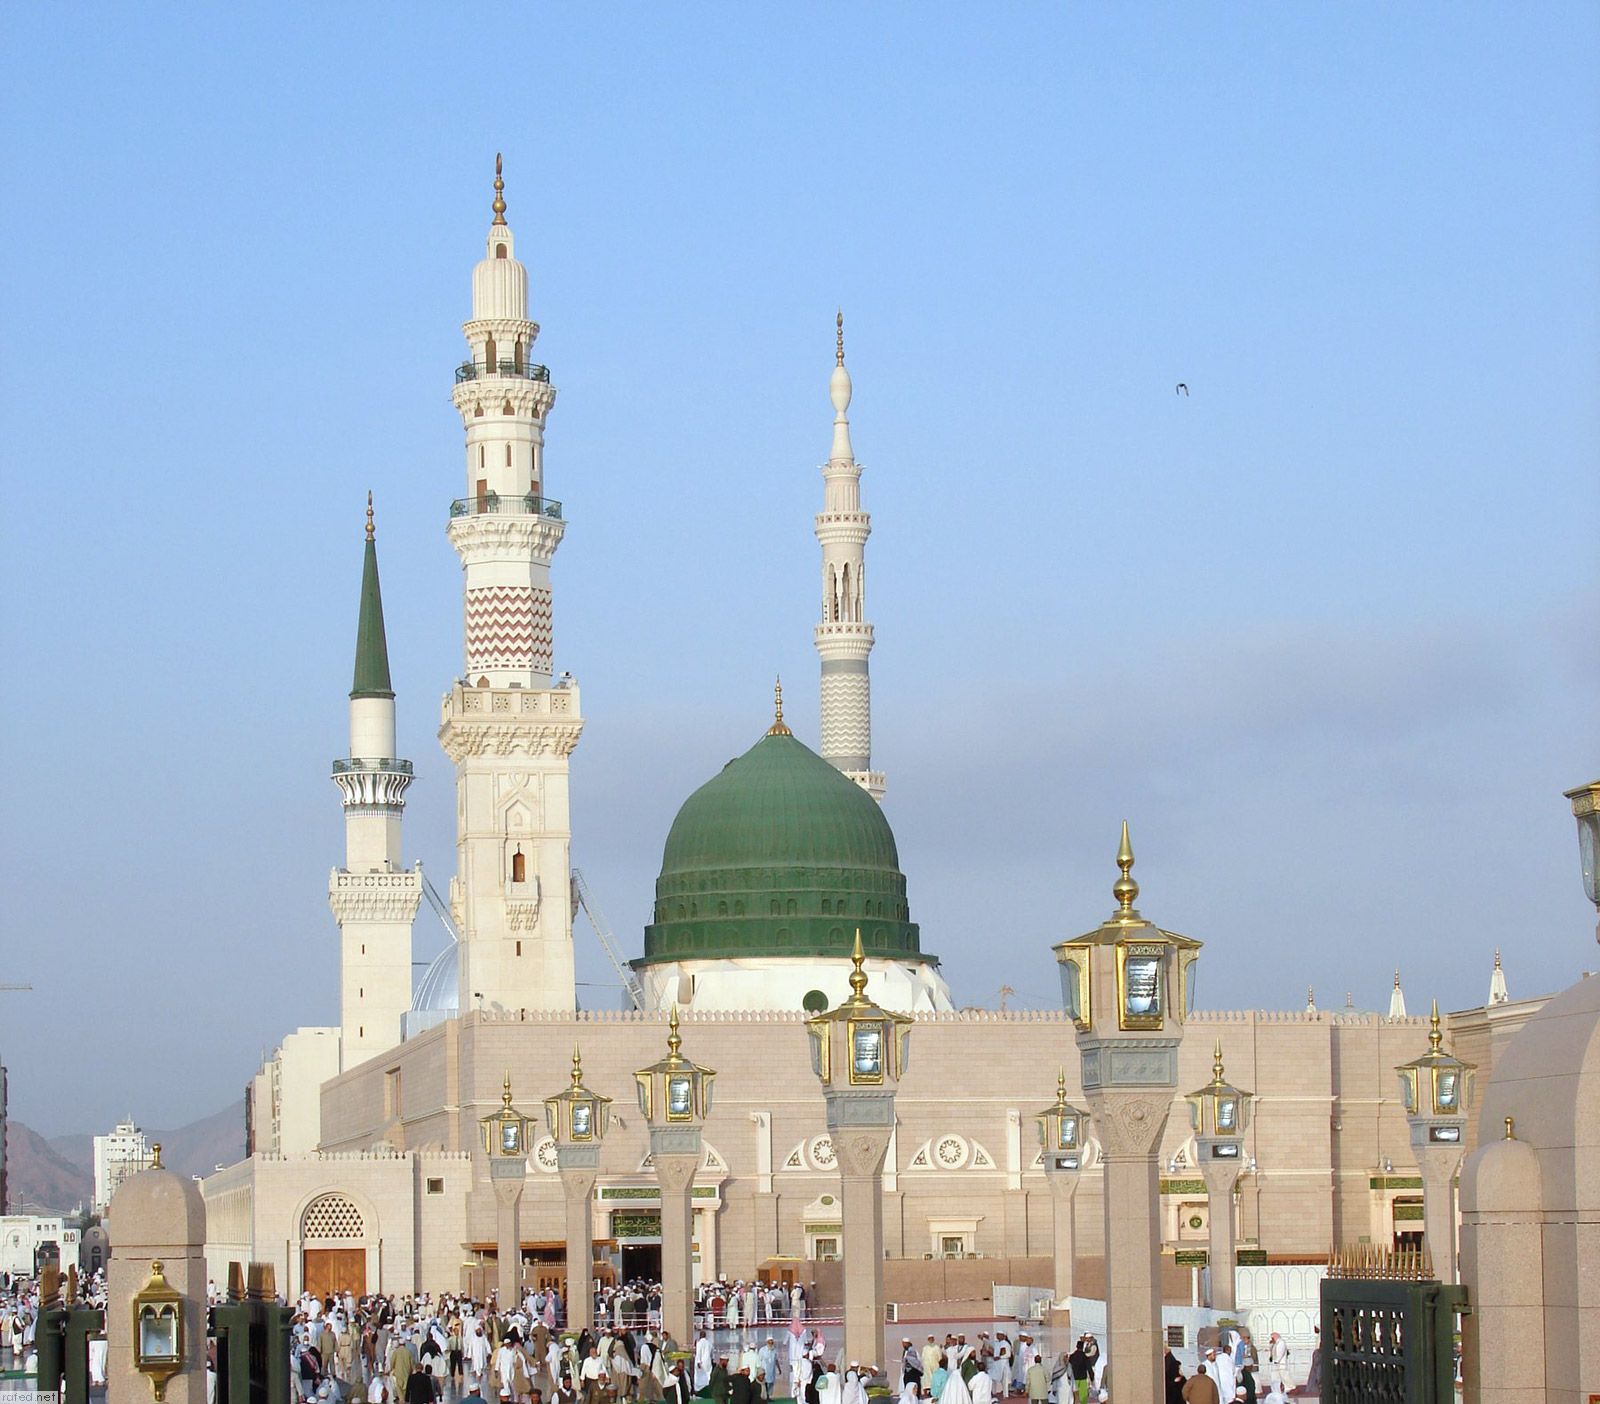 صور المسجد النبوى - صور مسجد المدينة المنورة - صور المسجد النبوى من الداخل